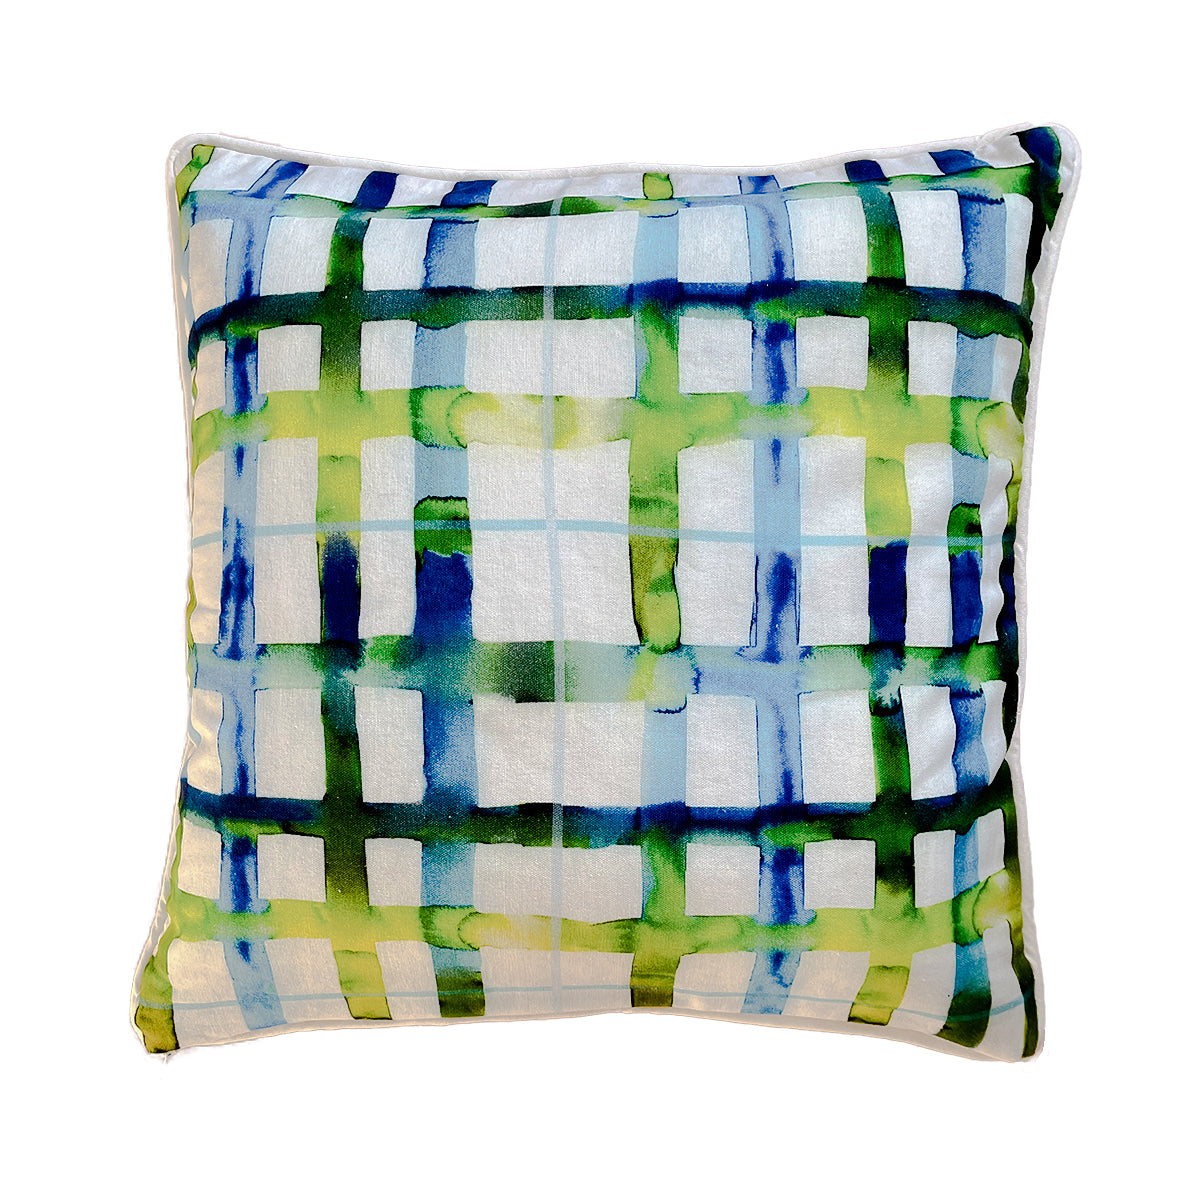 WHOLESALE: Watercolor Plaid Blues Pillow Covers Bulk